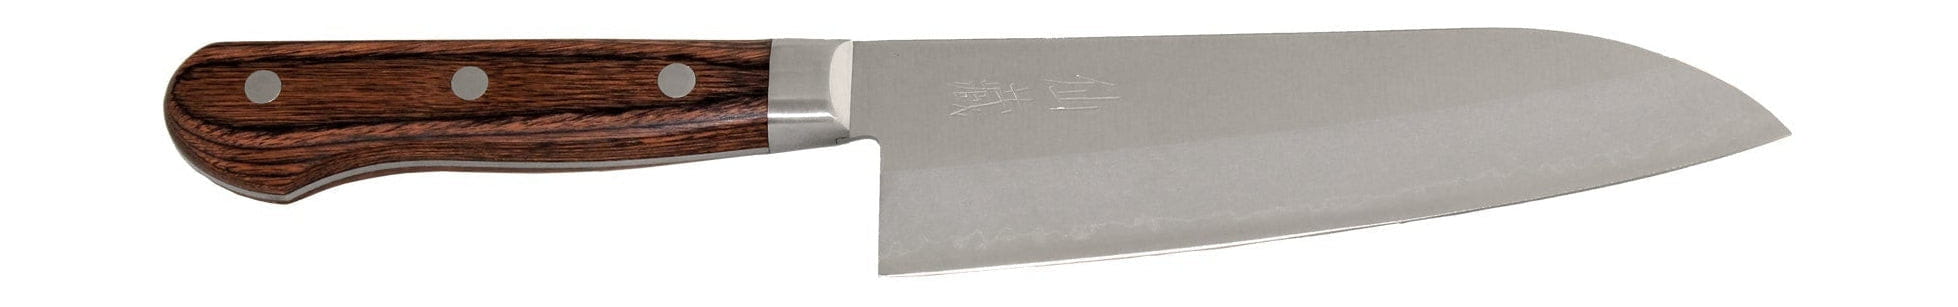 Senzo vêtu de 01 couteau Santoku, 16,5 cm